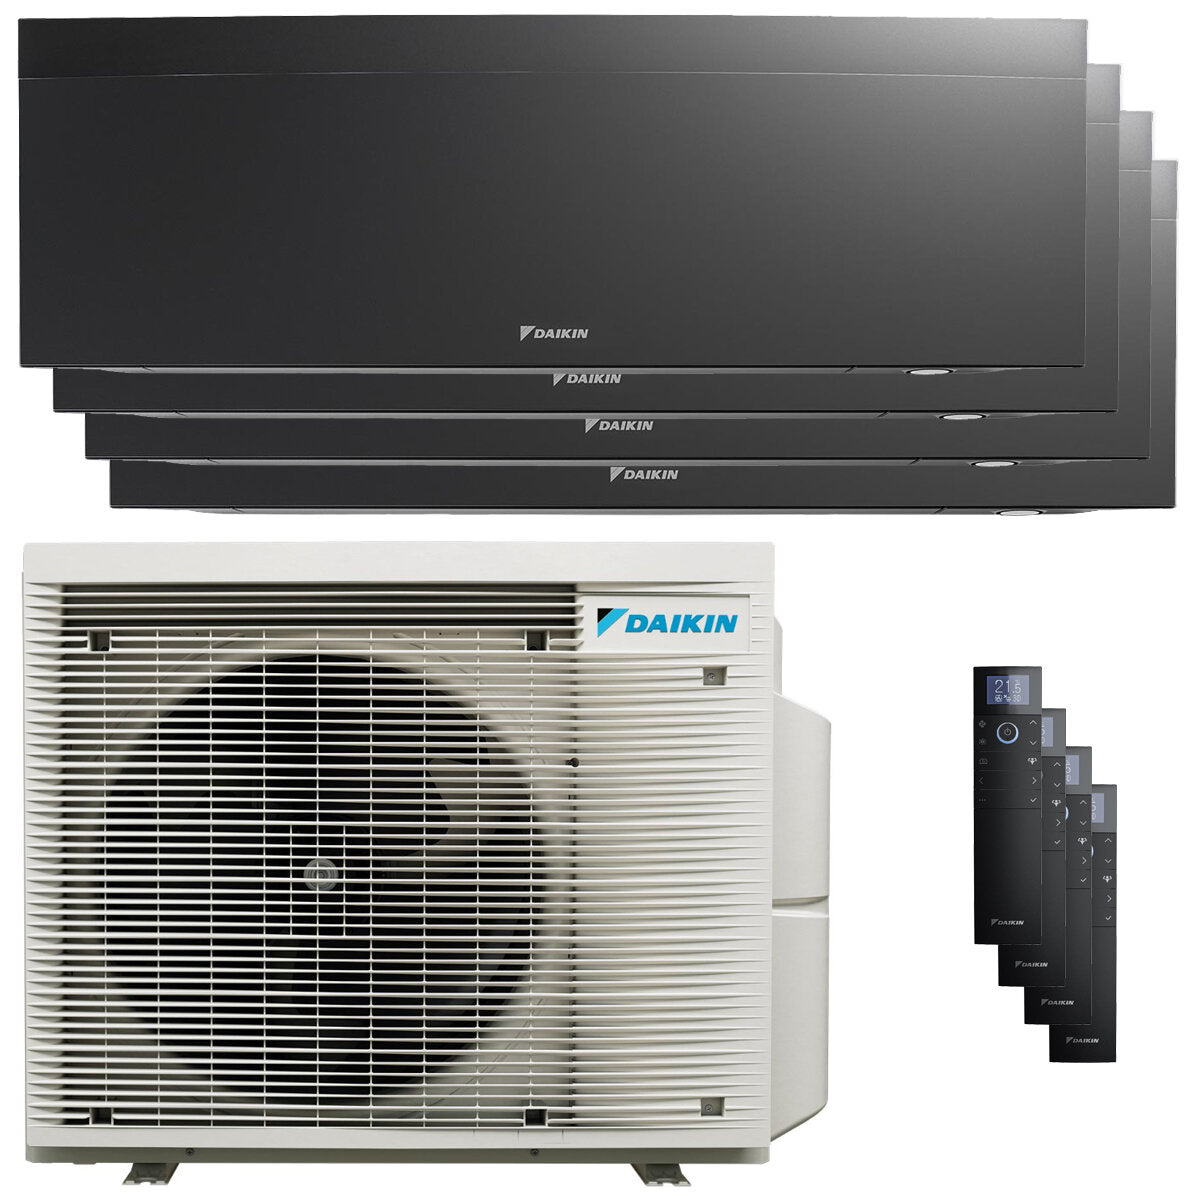 Daikin Emura air conditioner 3 split panels 9000+9000+12000+12000 BTU inverter A++ wifi outdoor unit 7.4 kW Black